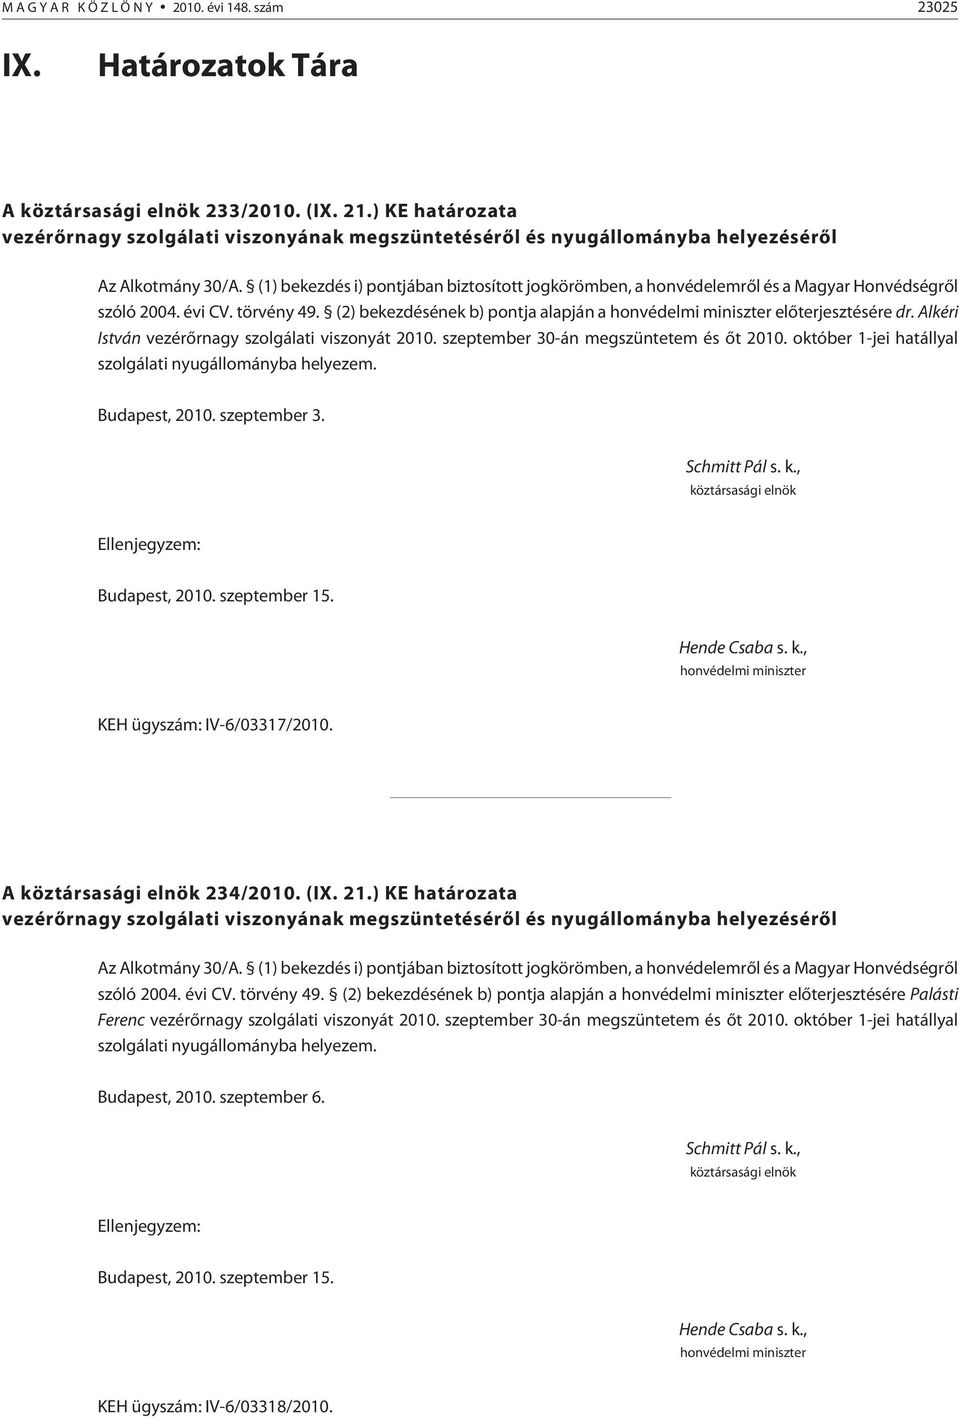 (1) bekezdés i) pontjában biztosított jogkörömben, a honvédelemrõl és a Magyar Honvédségrõl szóló 2004. évi CV. törvény 49.